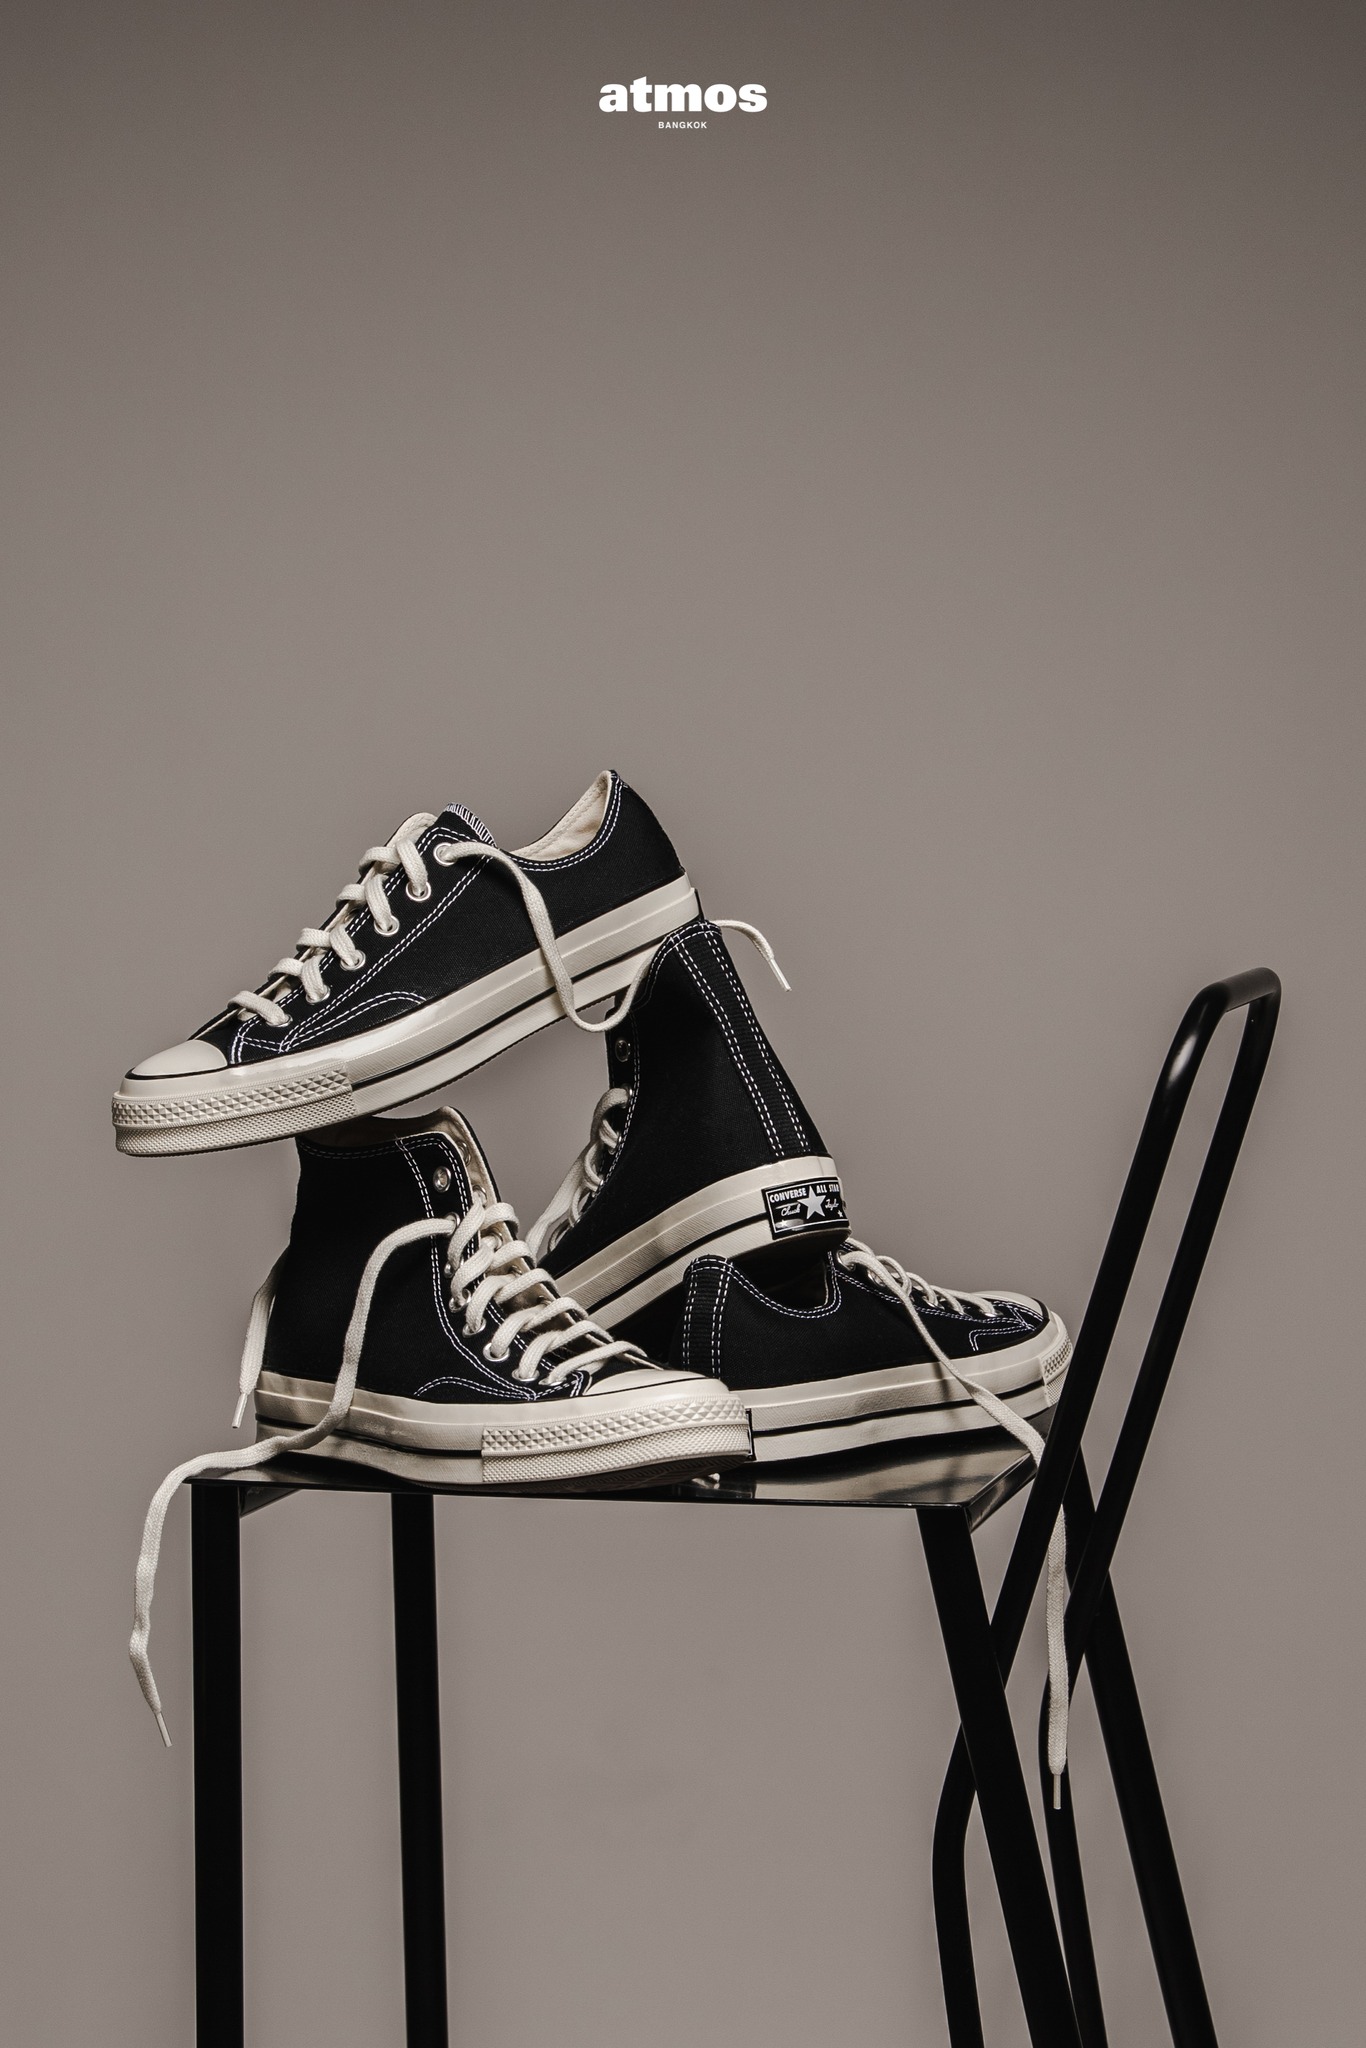 Converse All Star 70 Black รองเท้าผ้าใบระดับตำนานที่อยู่คู่ผู้คนทุกยุคสมัย